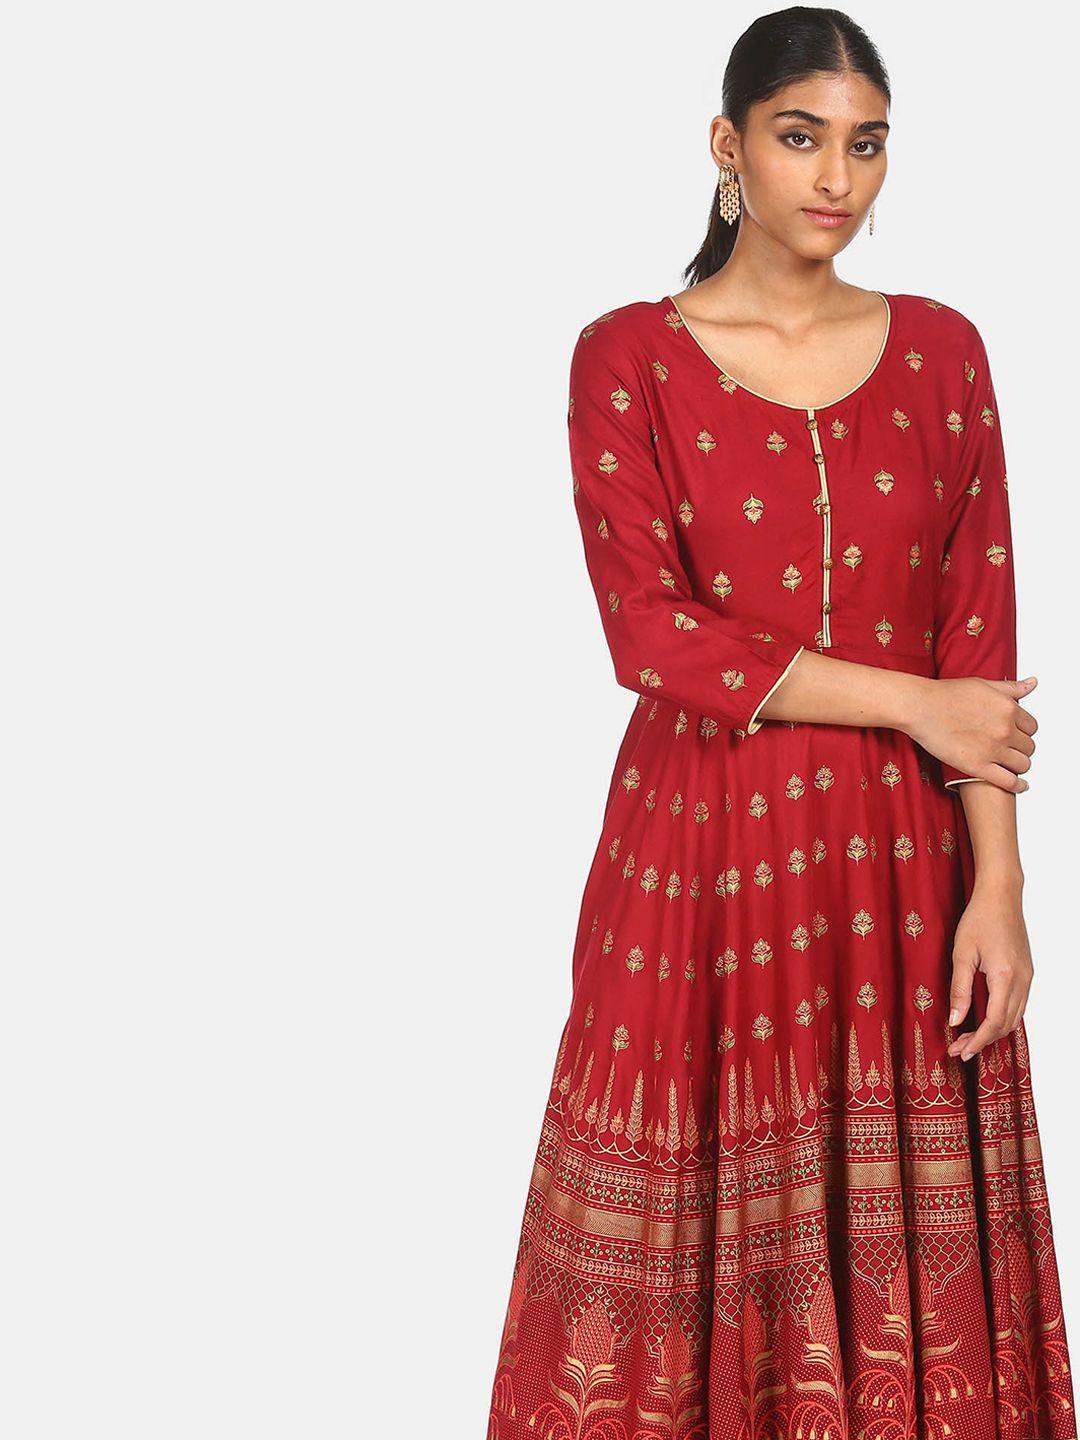 anahi women red & gold-toned ethnic motifs printed indie prints anarkali kurta